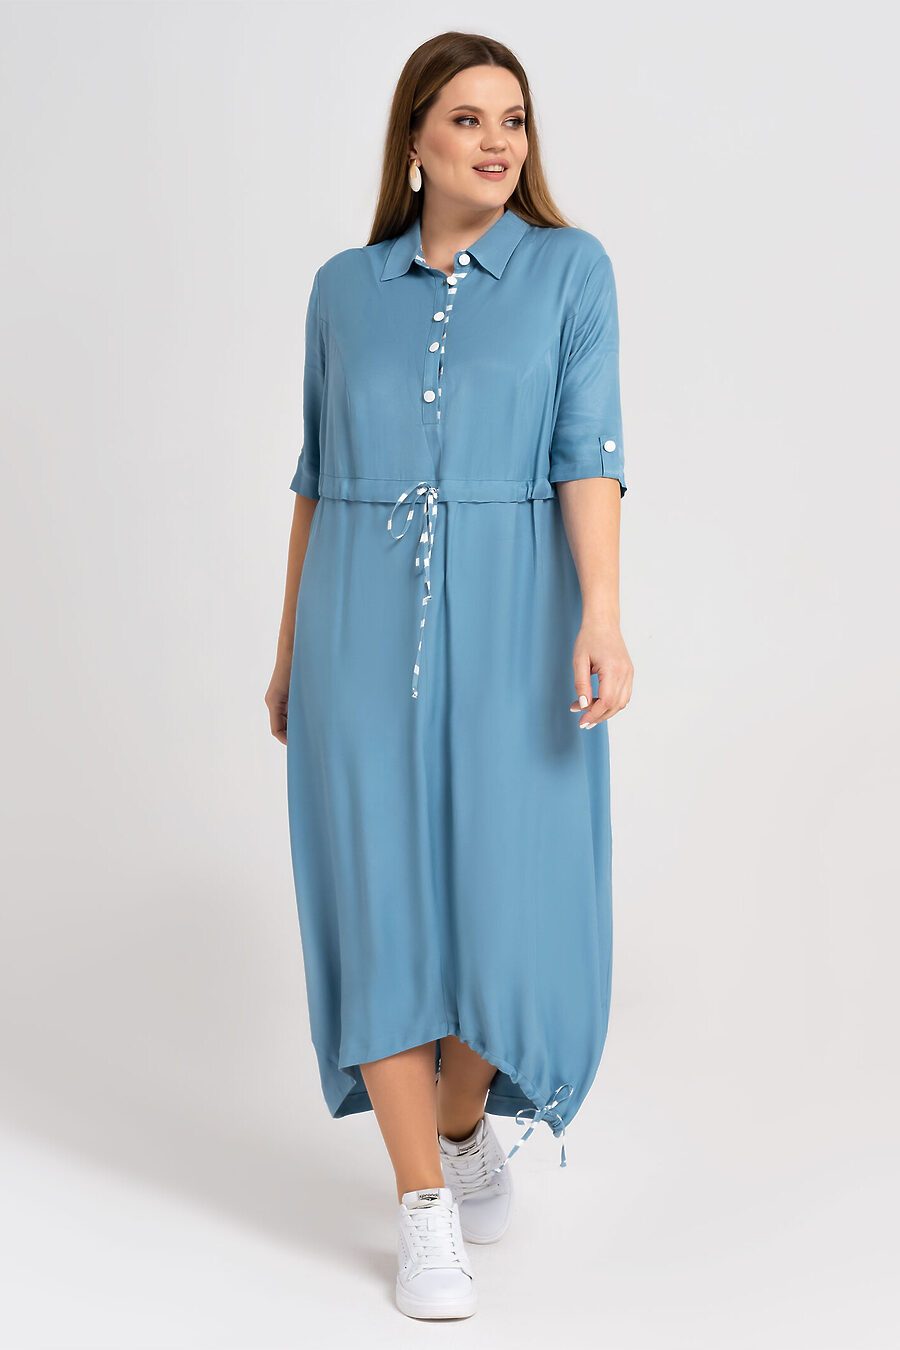 Платье для женщин PANDA 683836 купить оптом от производителя. Совместная покупка женской одежды в OptMoyo